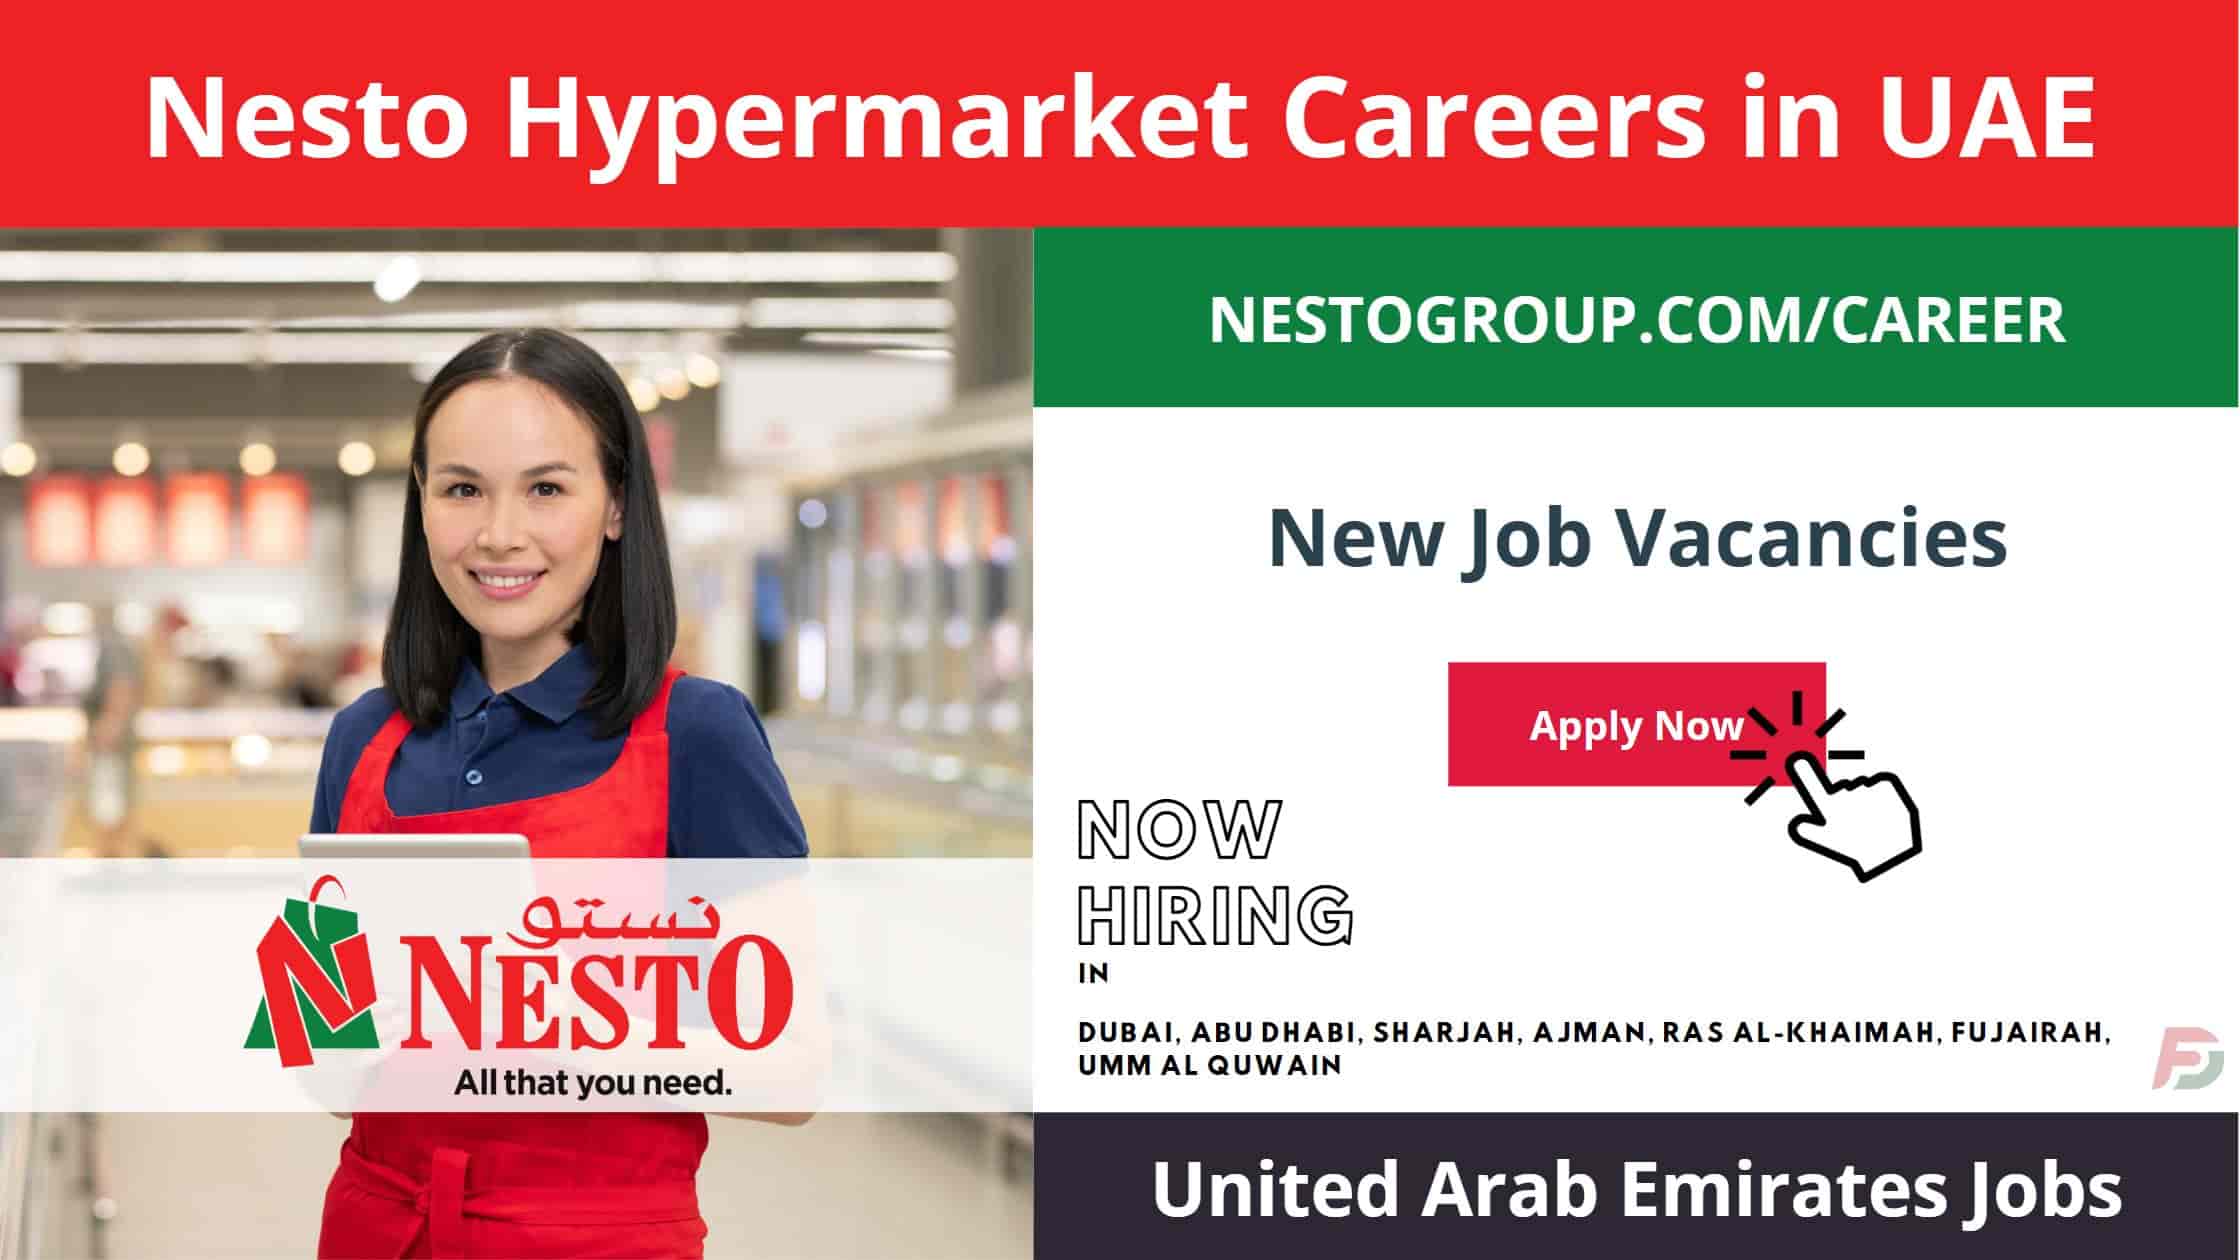 Nesto Hypermarket Careers in UAE